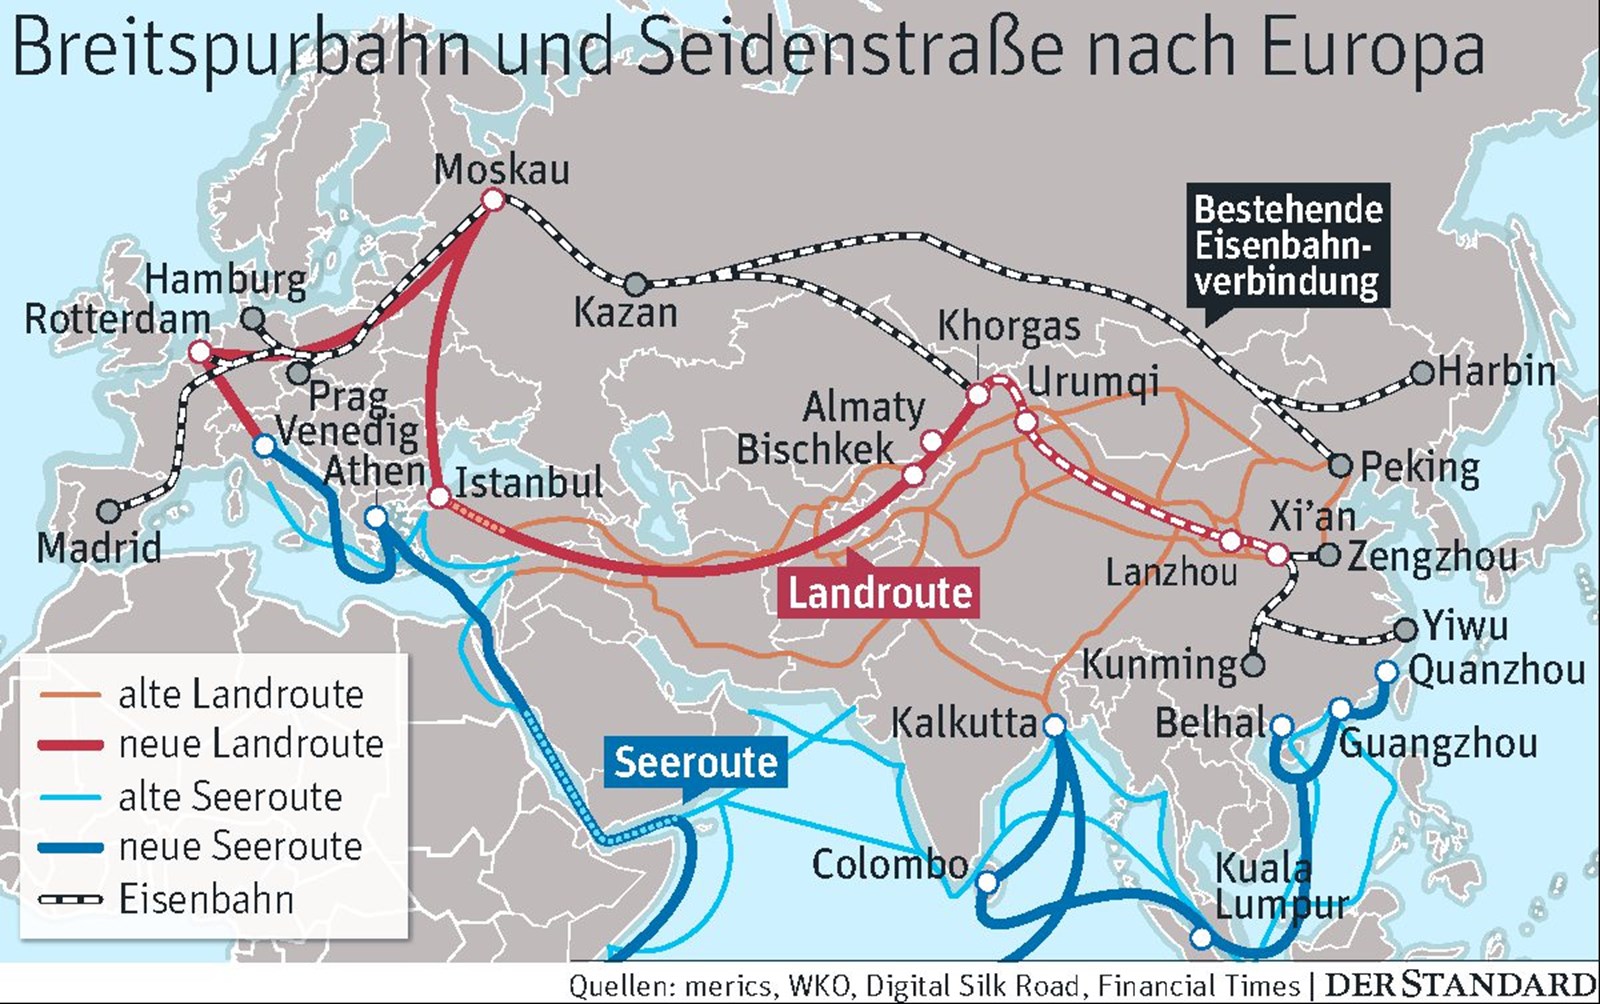 Österreichs und Chinas Interessen kommen sich am Balkan in die Quere